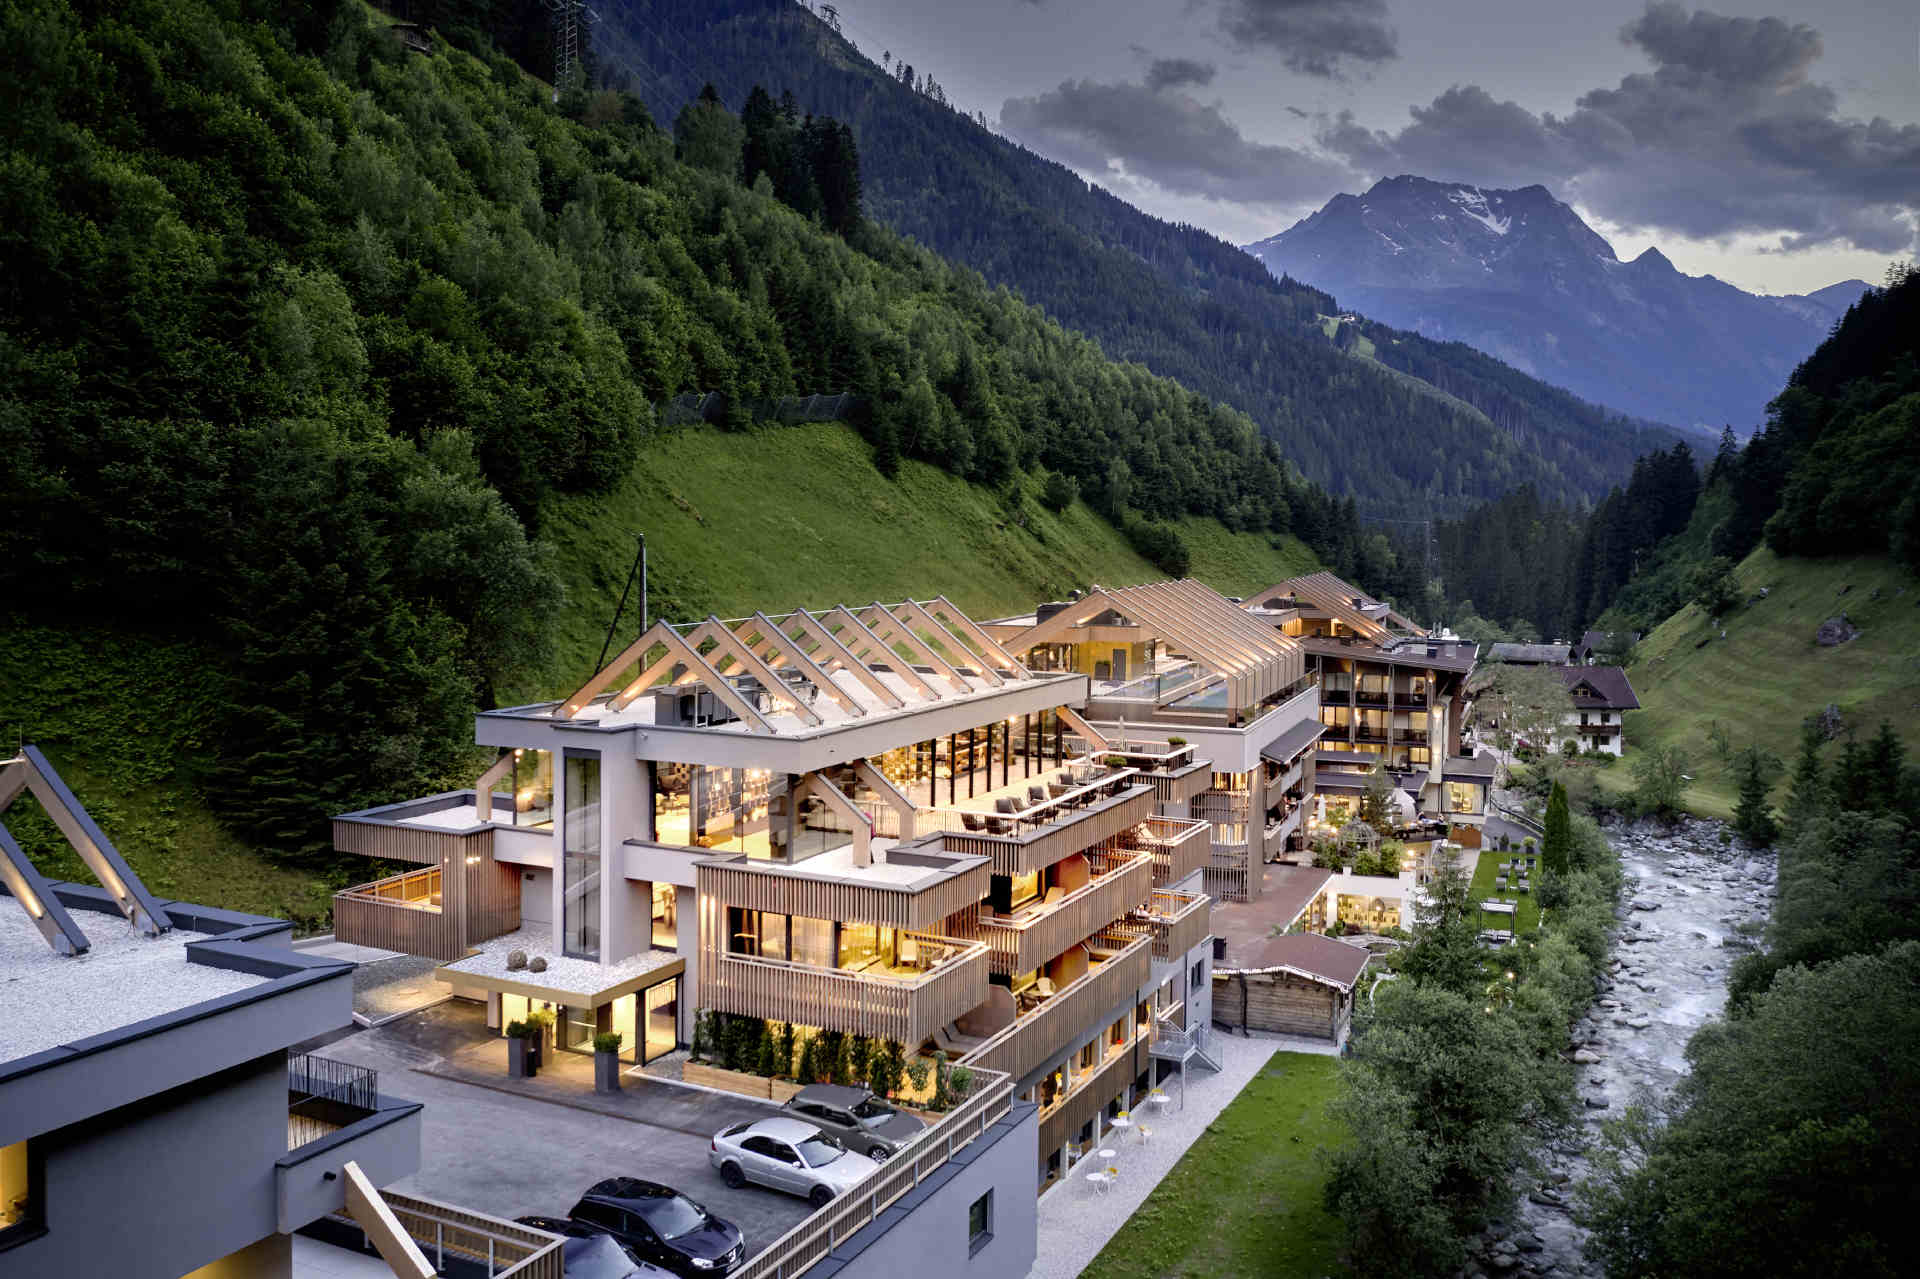 Das Hotel ZillergrundRock – Luxury Mountain Resort sitzt in Mayrhofen im Zillertal. © Michael Huber / www.huber-fotografie.at